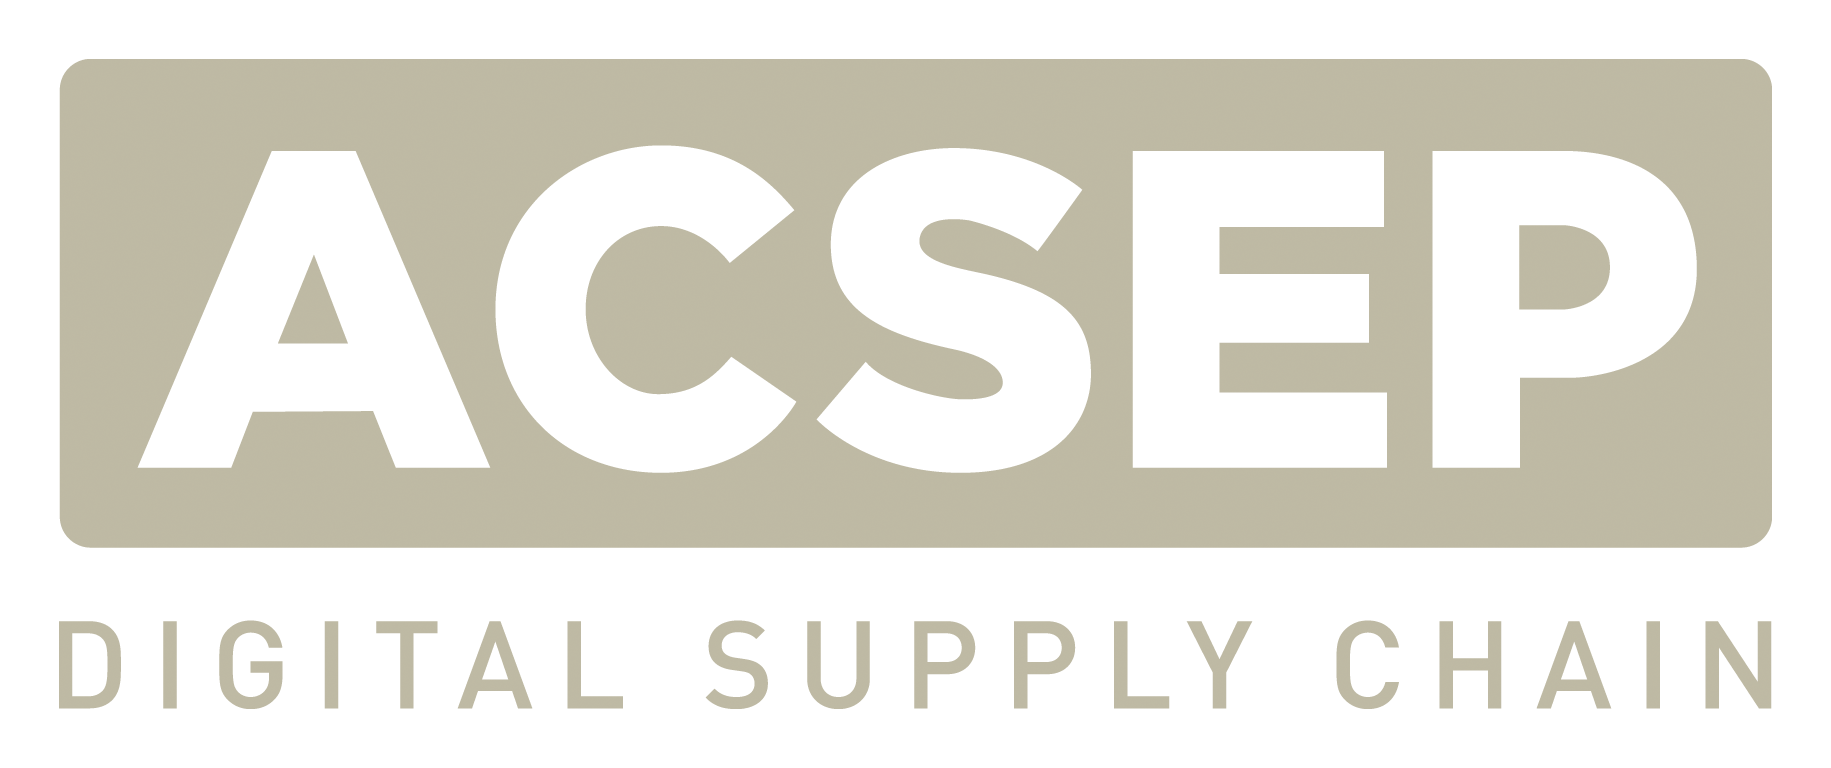 ACSEP logo RVB